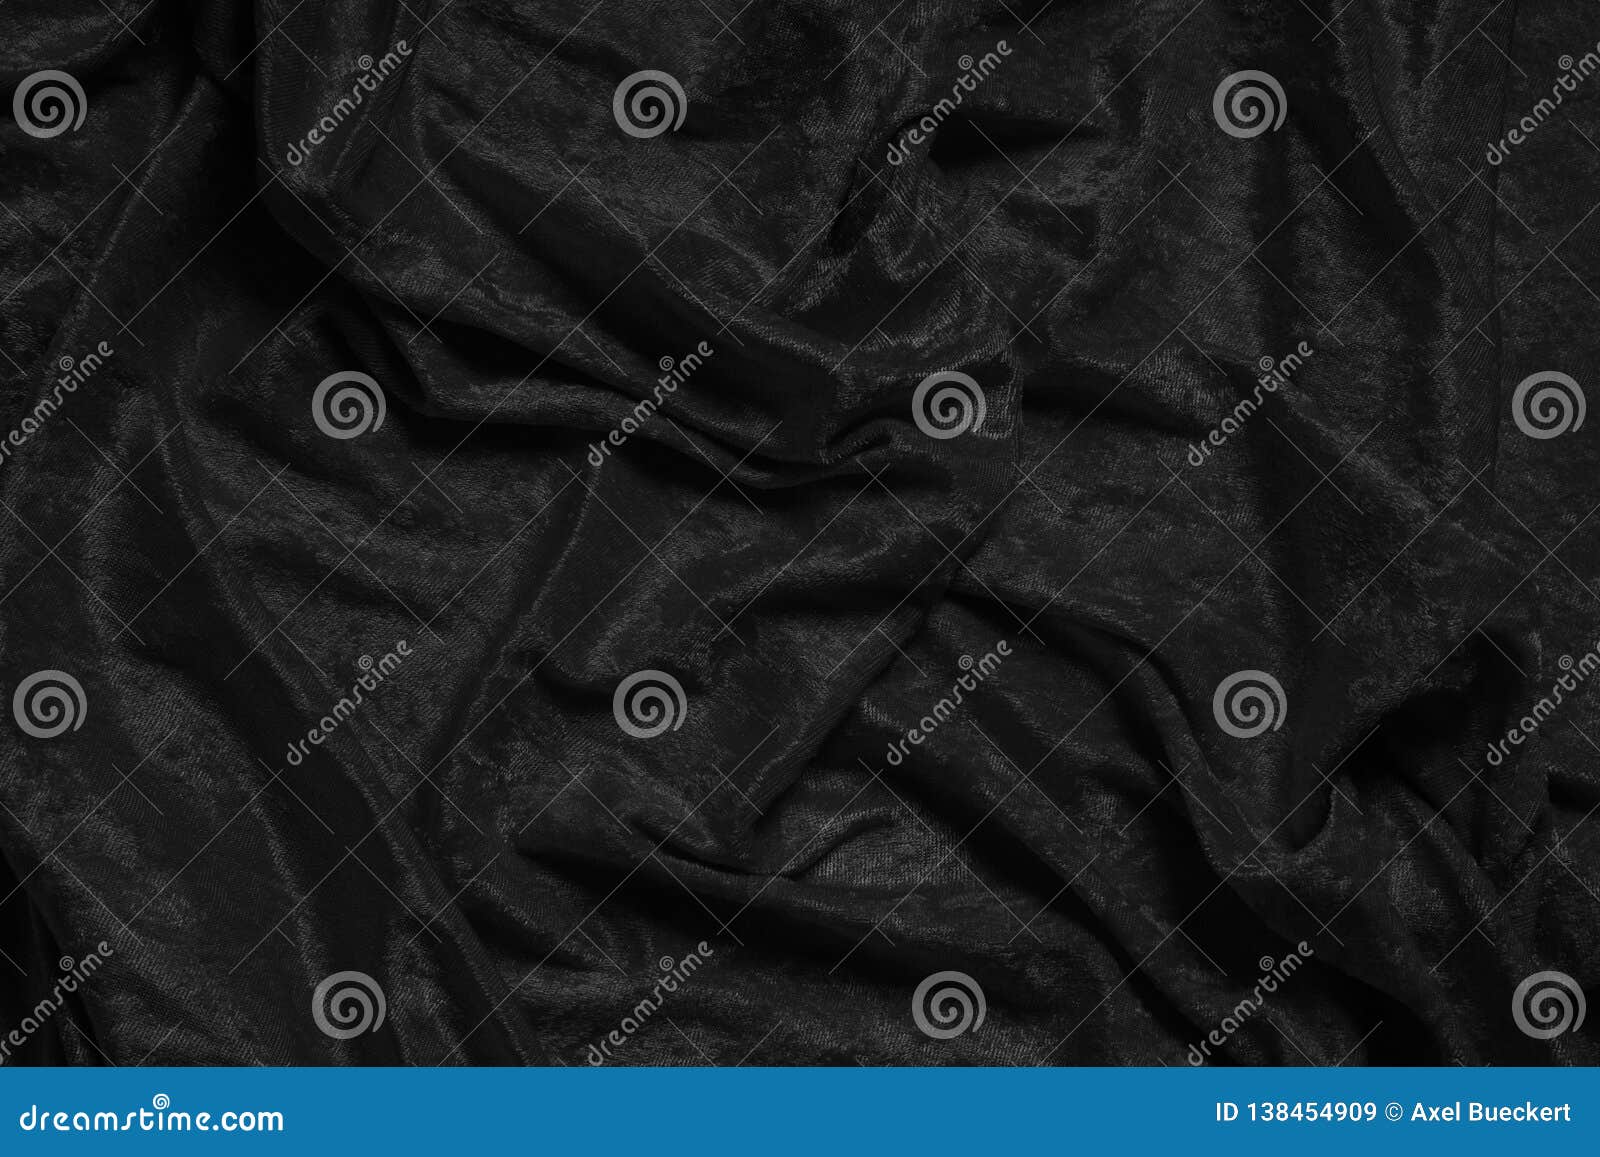 black velvet background